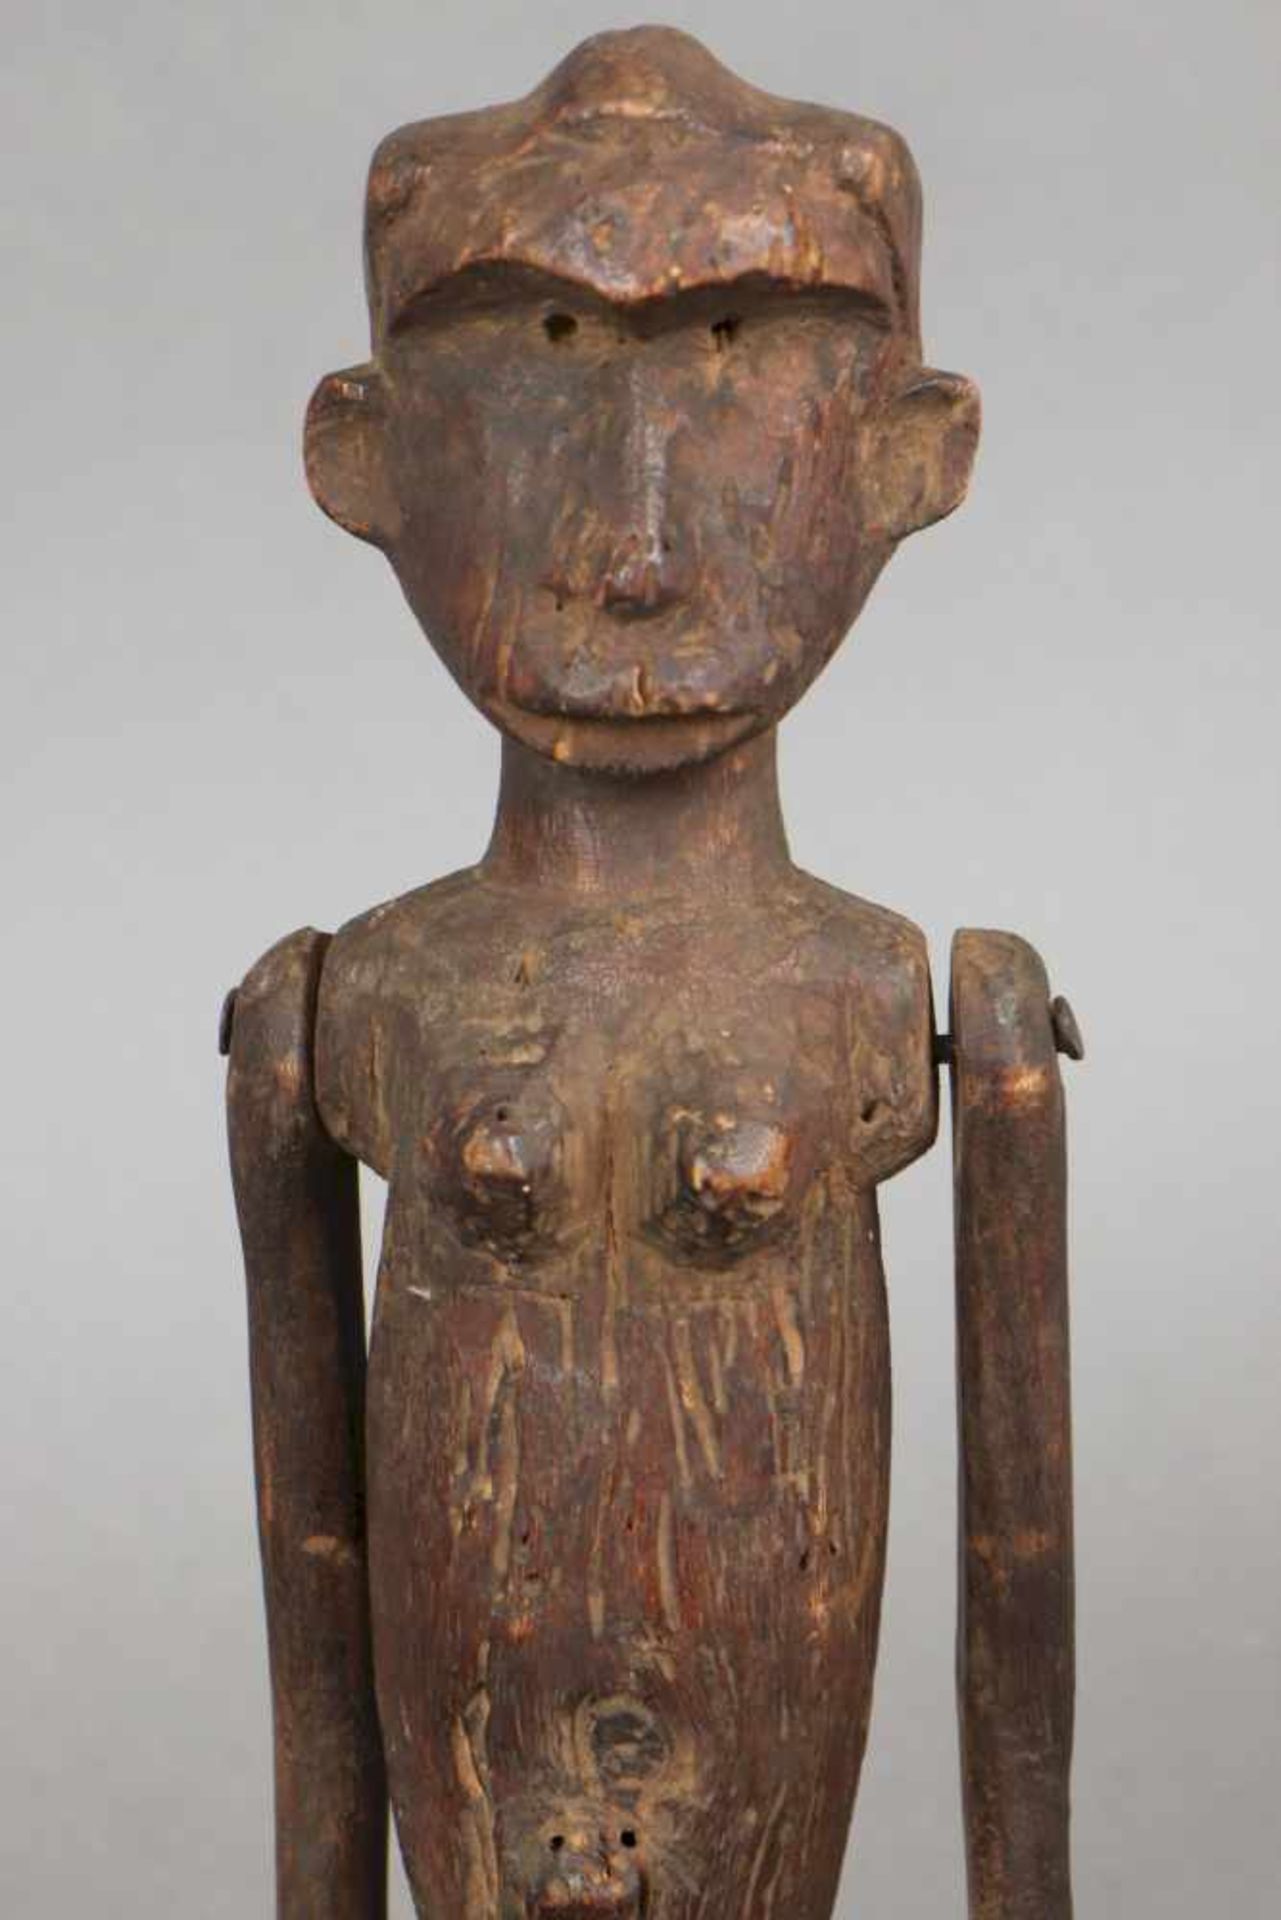 2 Sukuma ¨Marionetten¨ Figuren, Tanzania Holz, geschnitzt, mit beweglichen Gliedmaßen, weibliche - Bild 3 aus 3